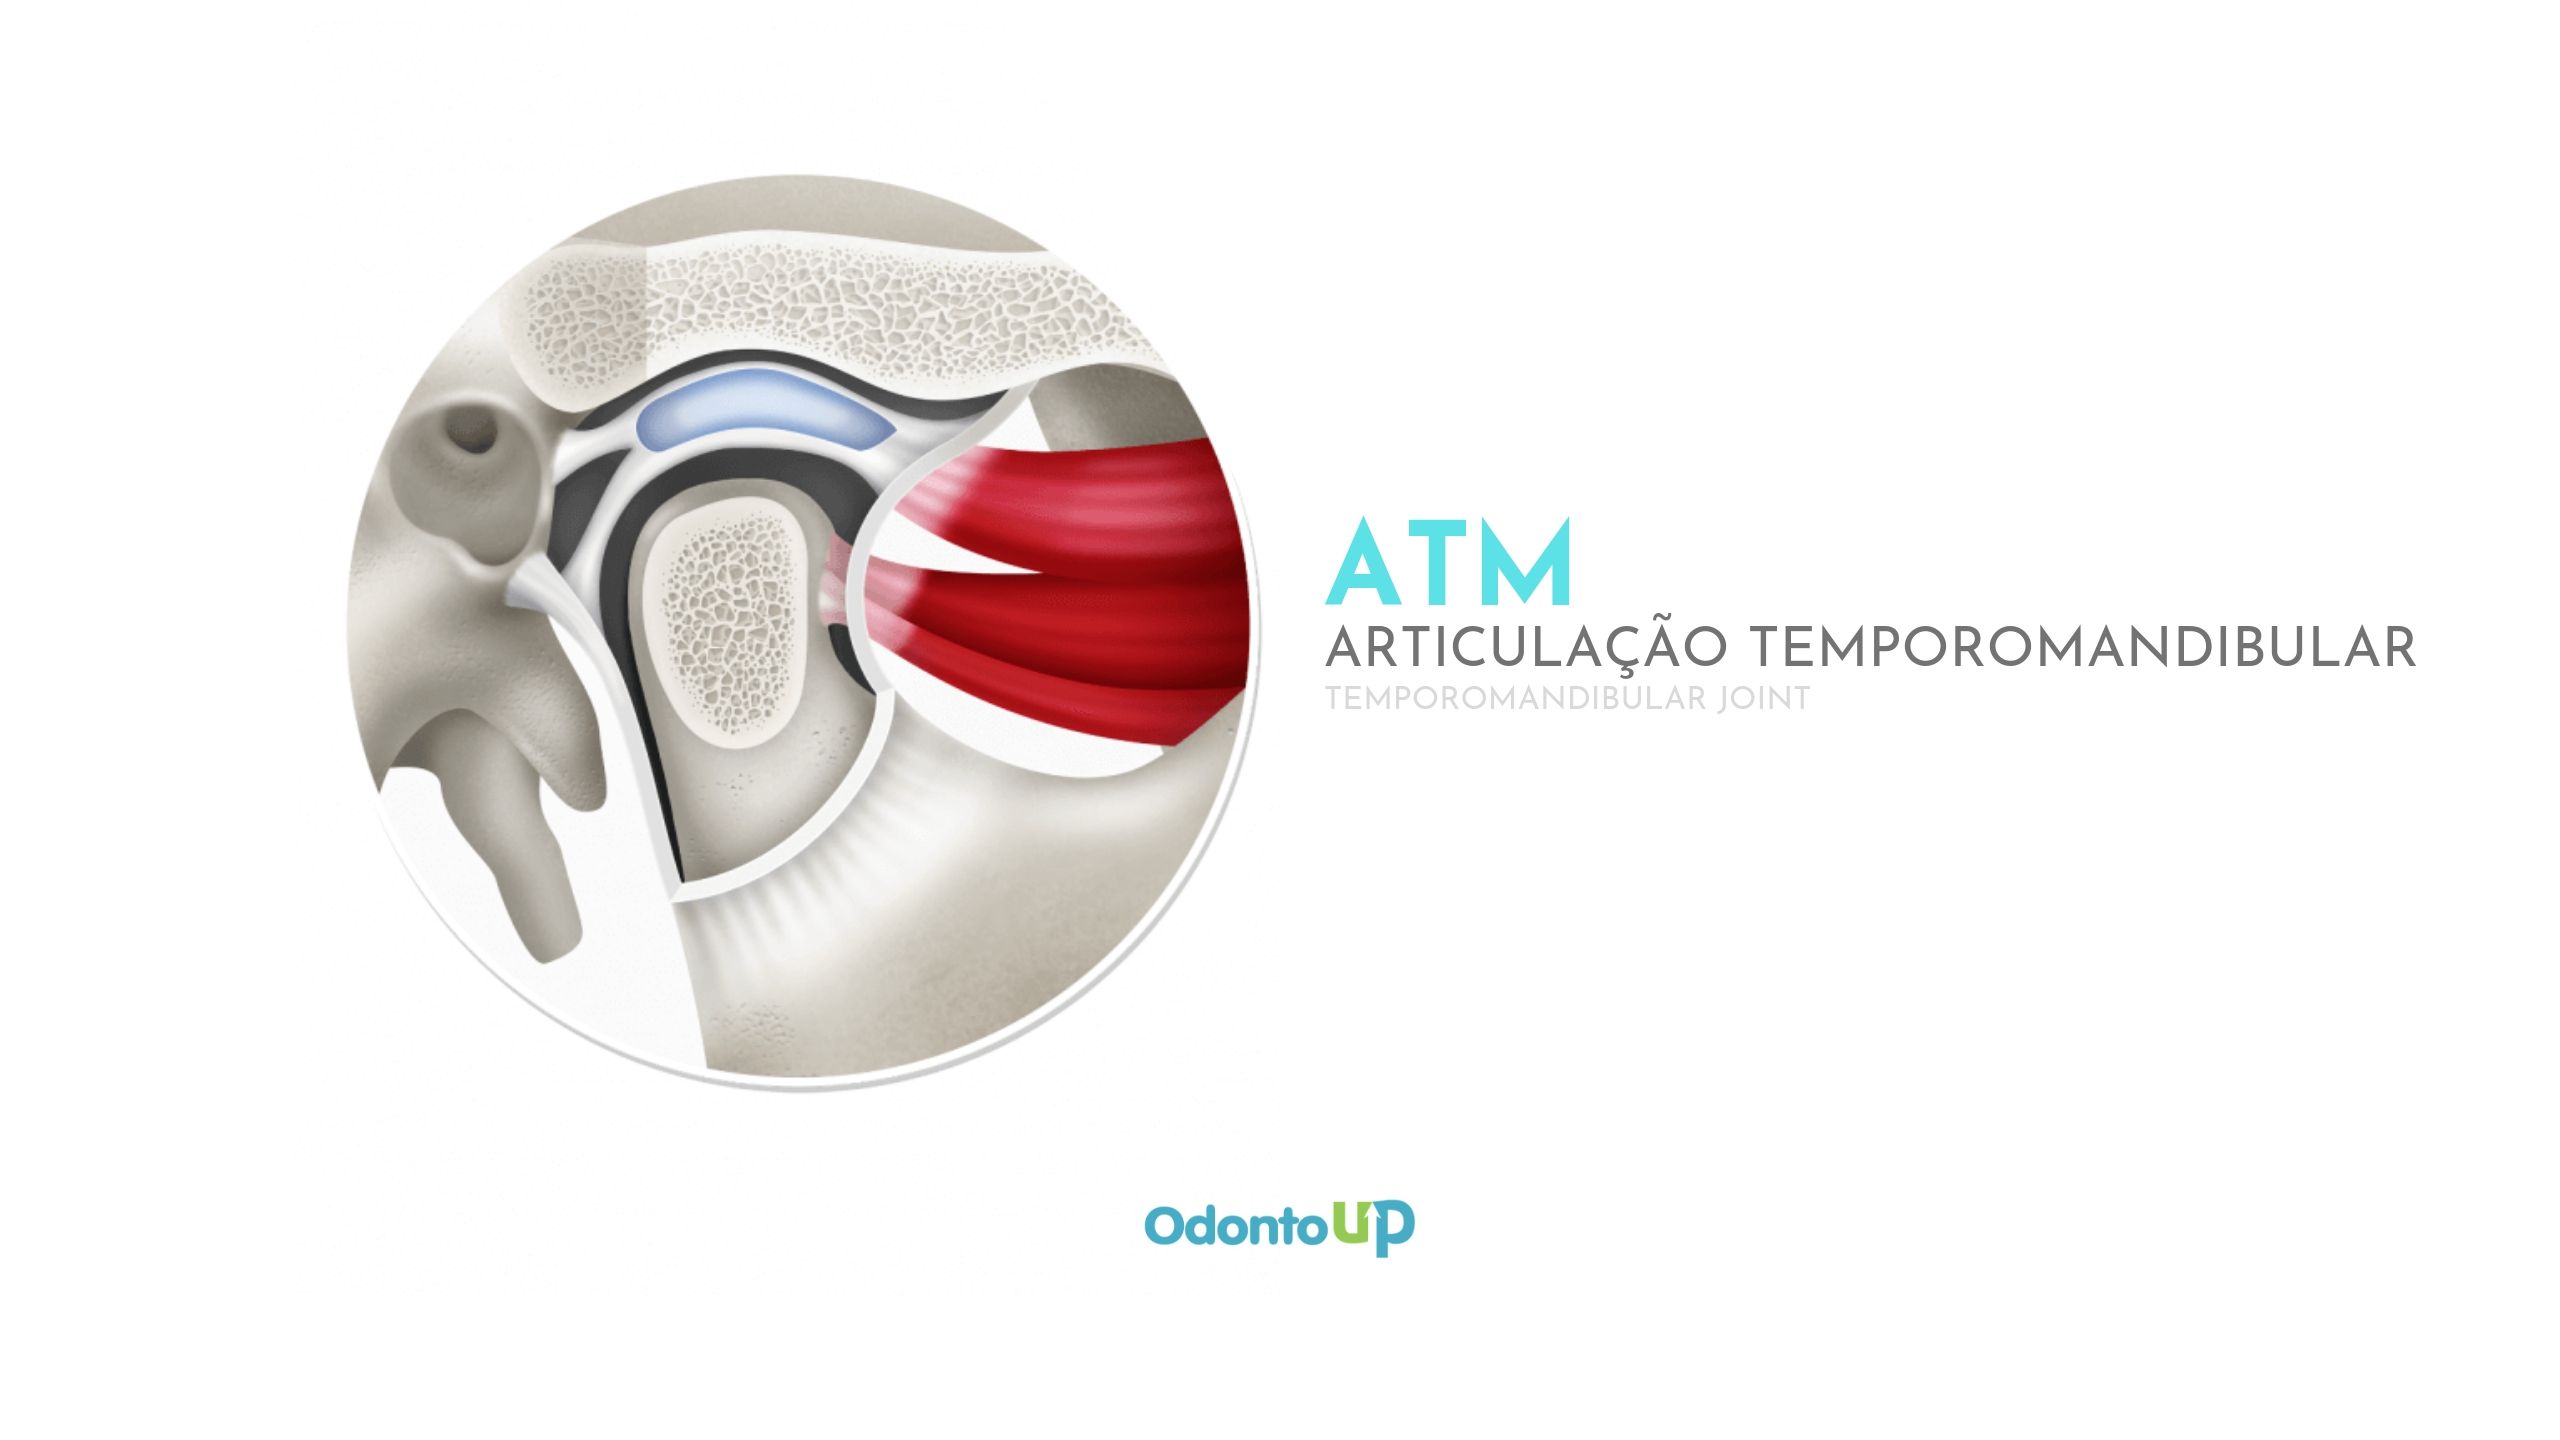 Clínica Statto - A Articulação Temporomandibular (ATM) funciona